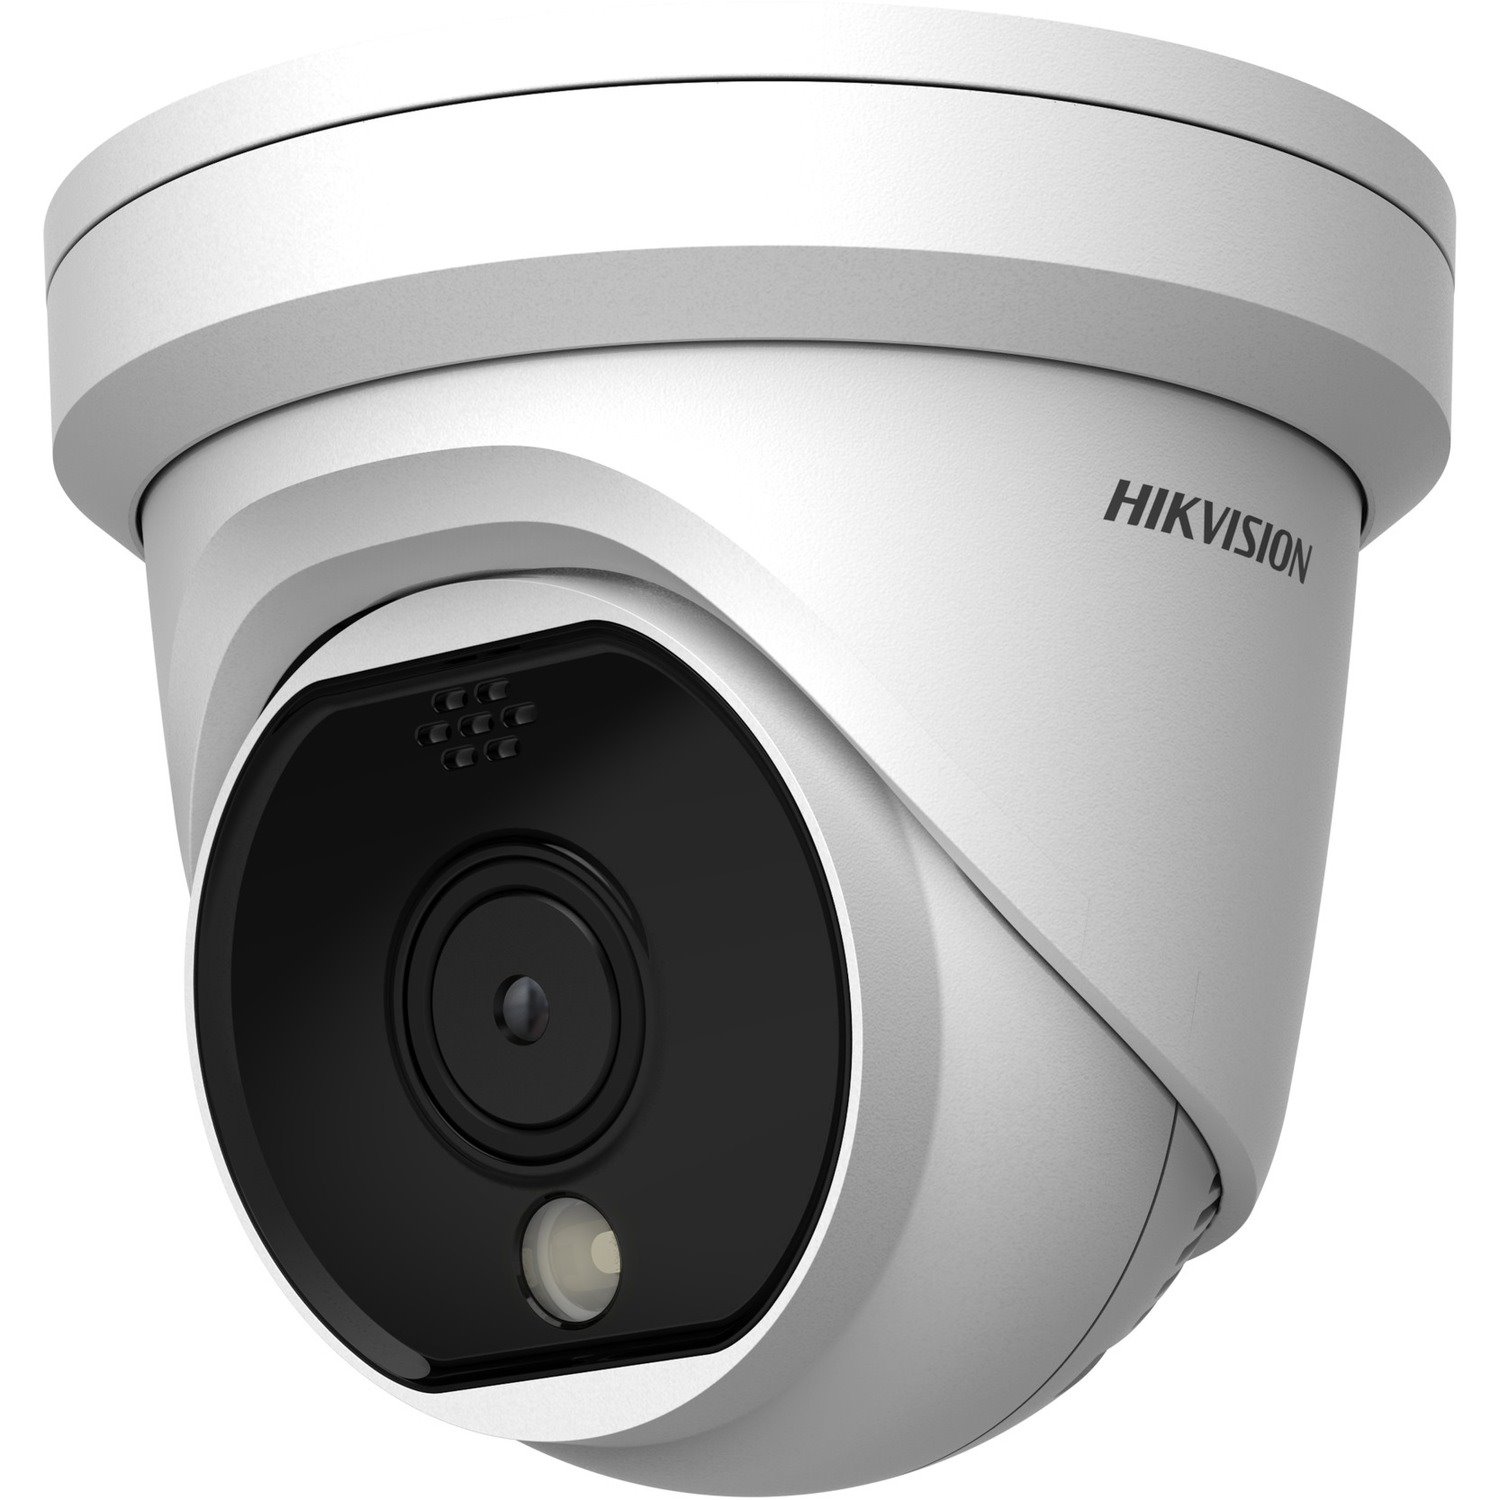 Hikvision HeatPro DS-2TD1117-2/PA Network Camera - Color - Turret